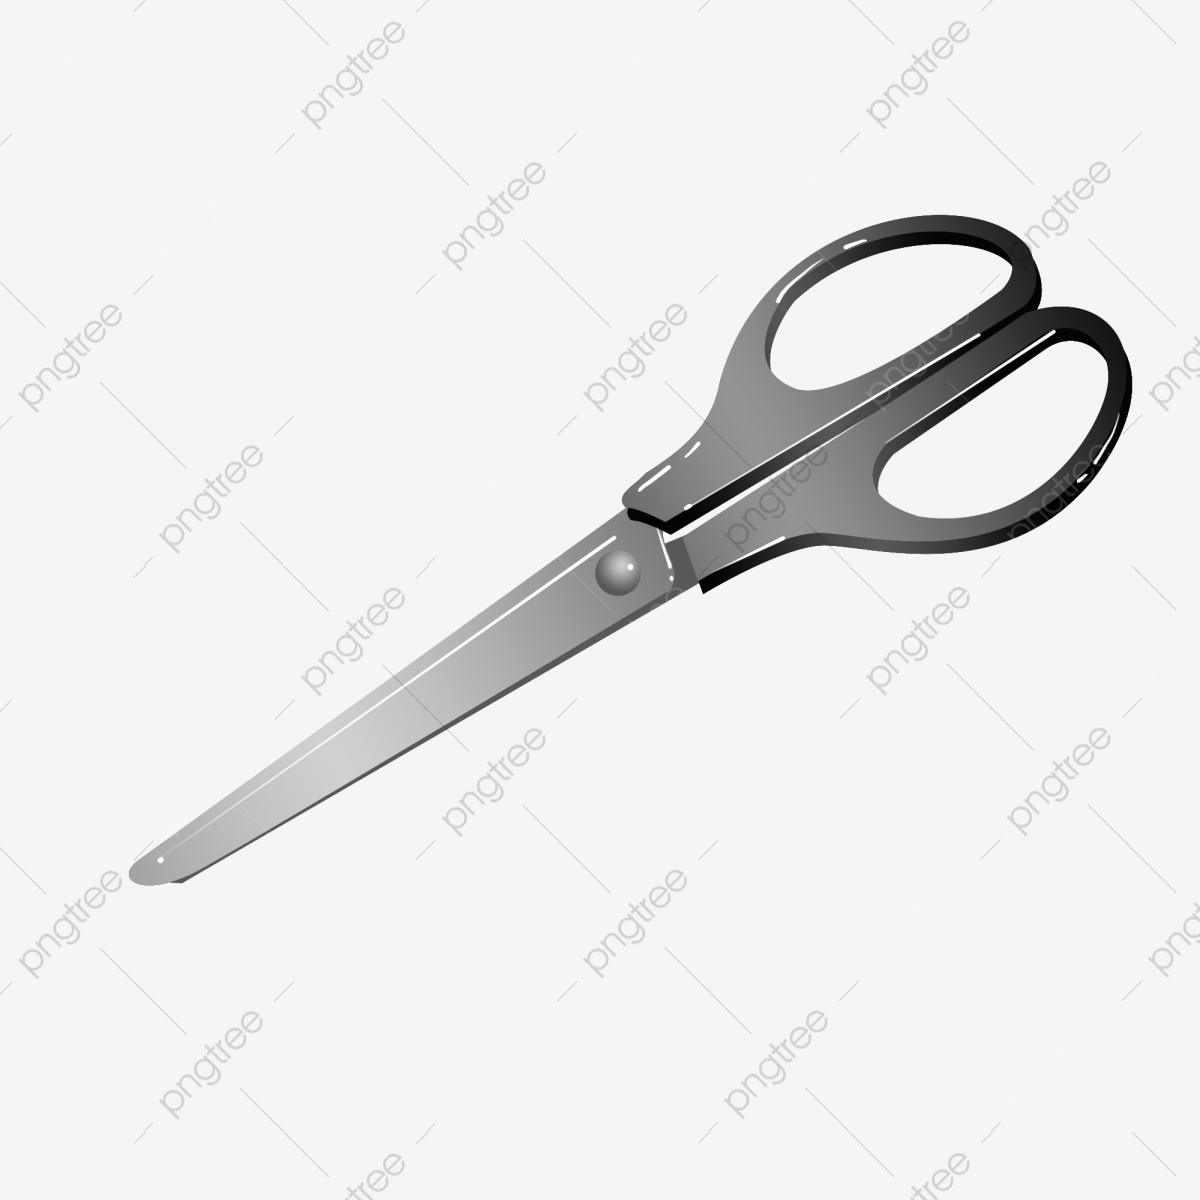 clipart scissors decorative scissors